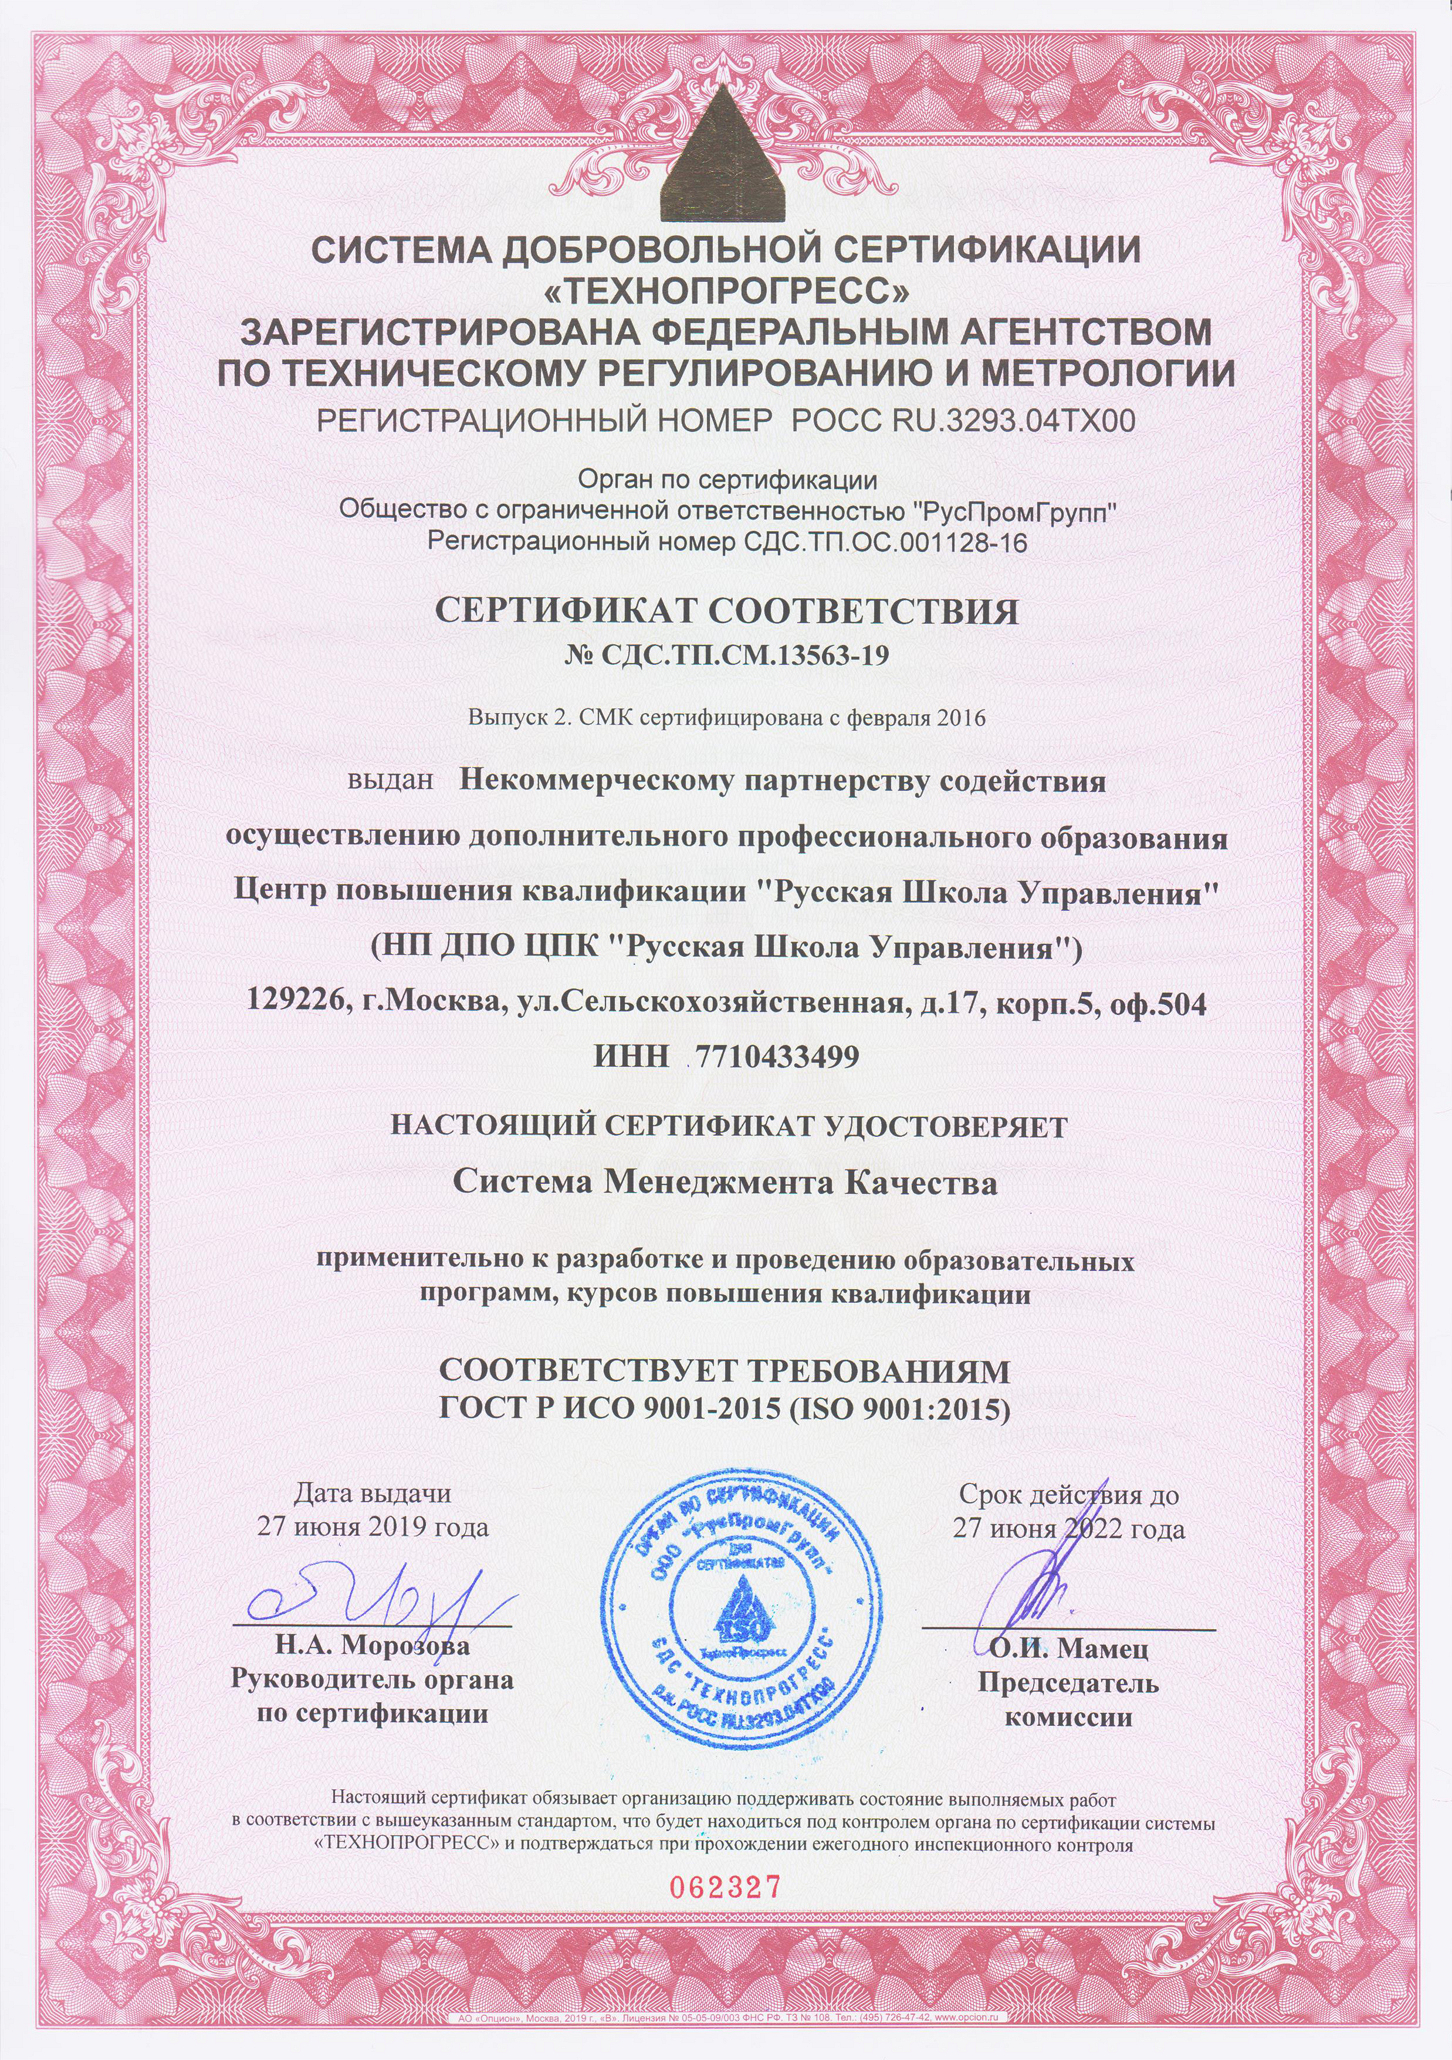 Дипломы и аккредитации Русской Школы Управления